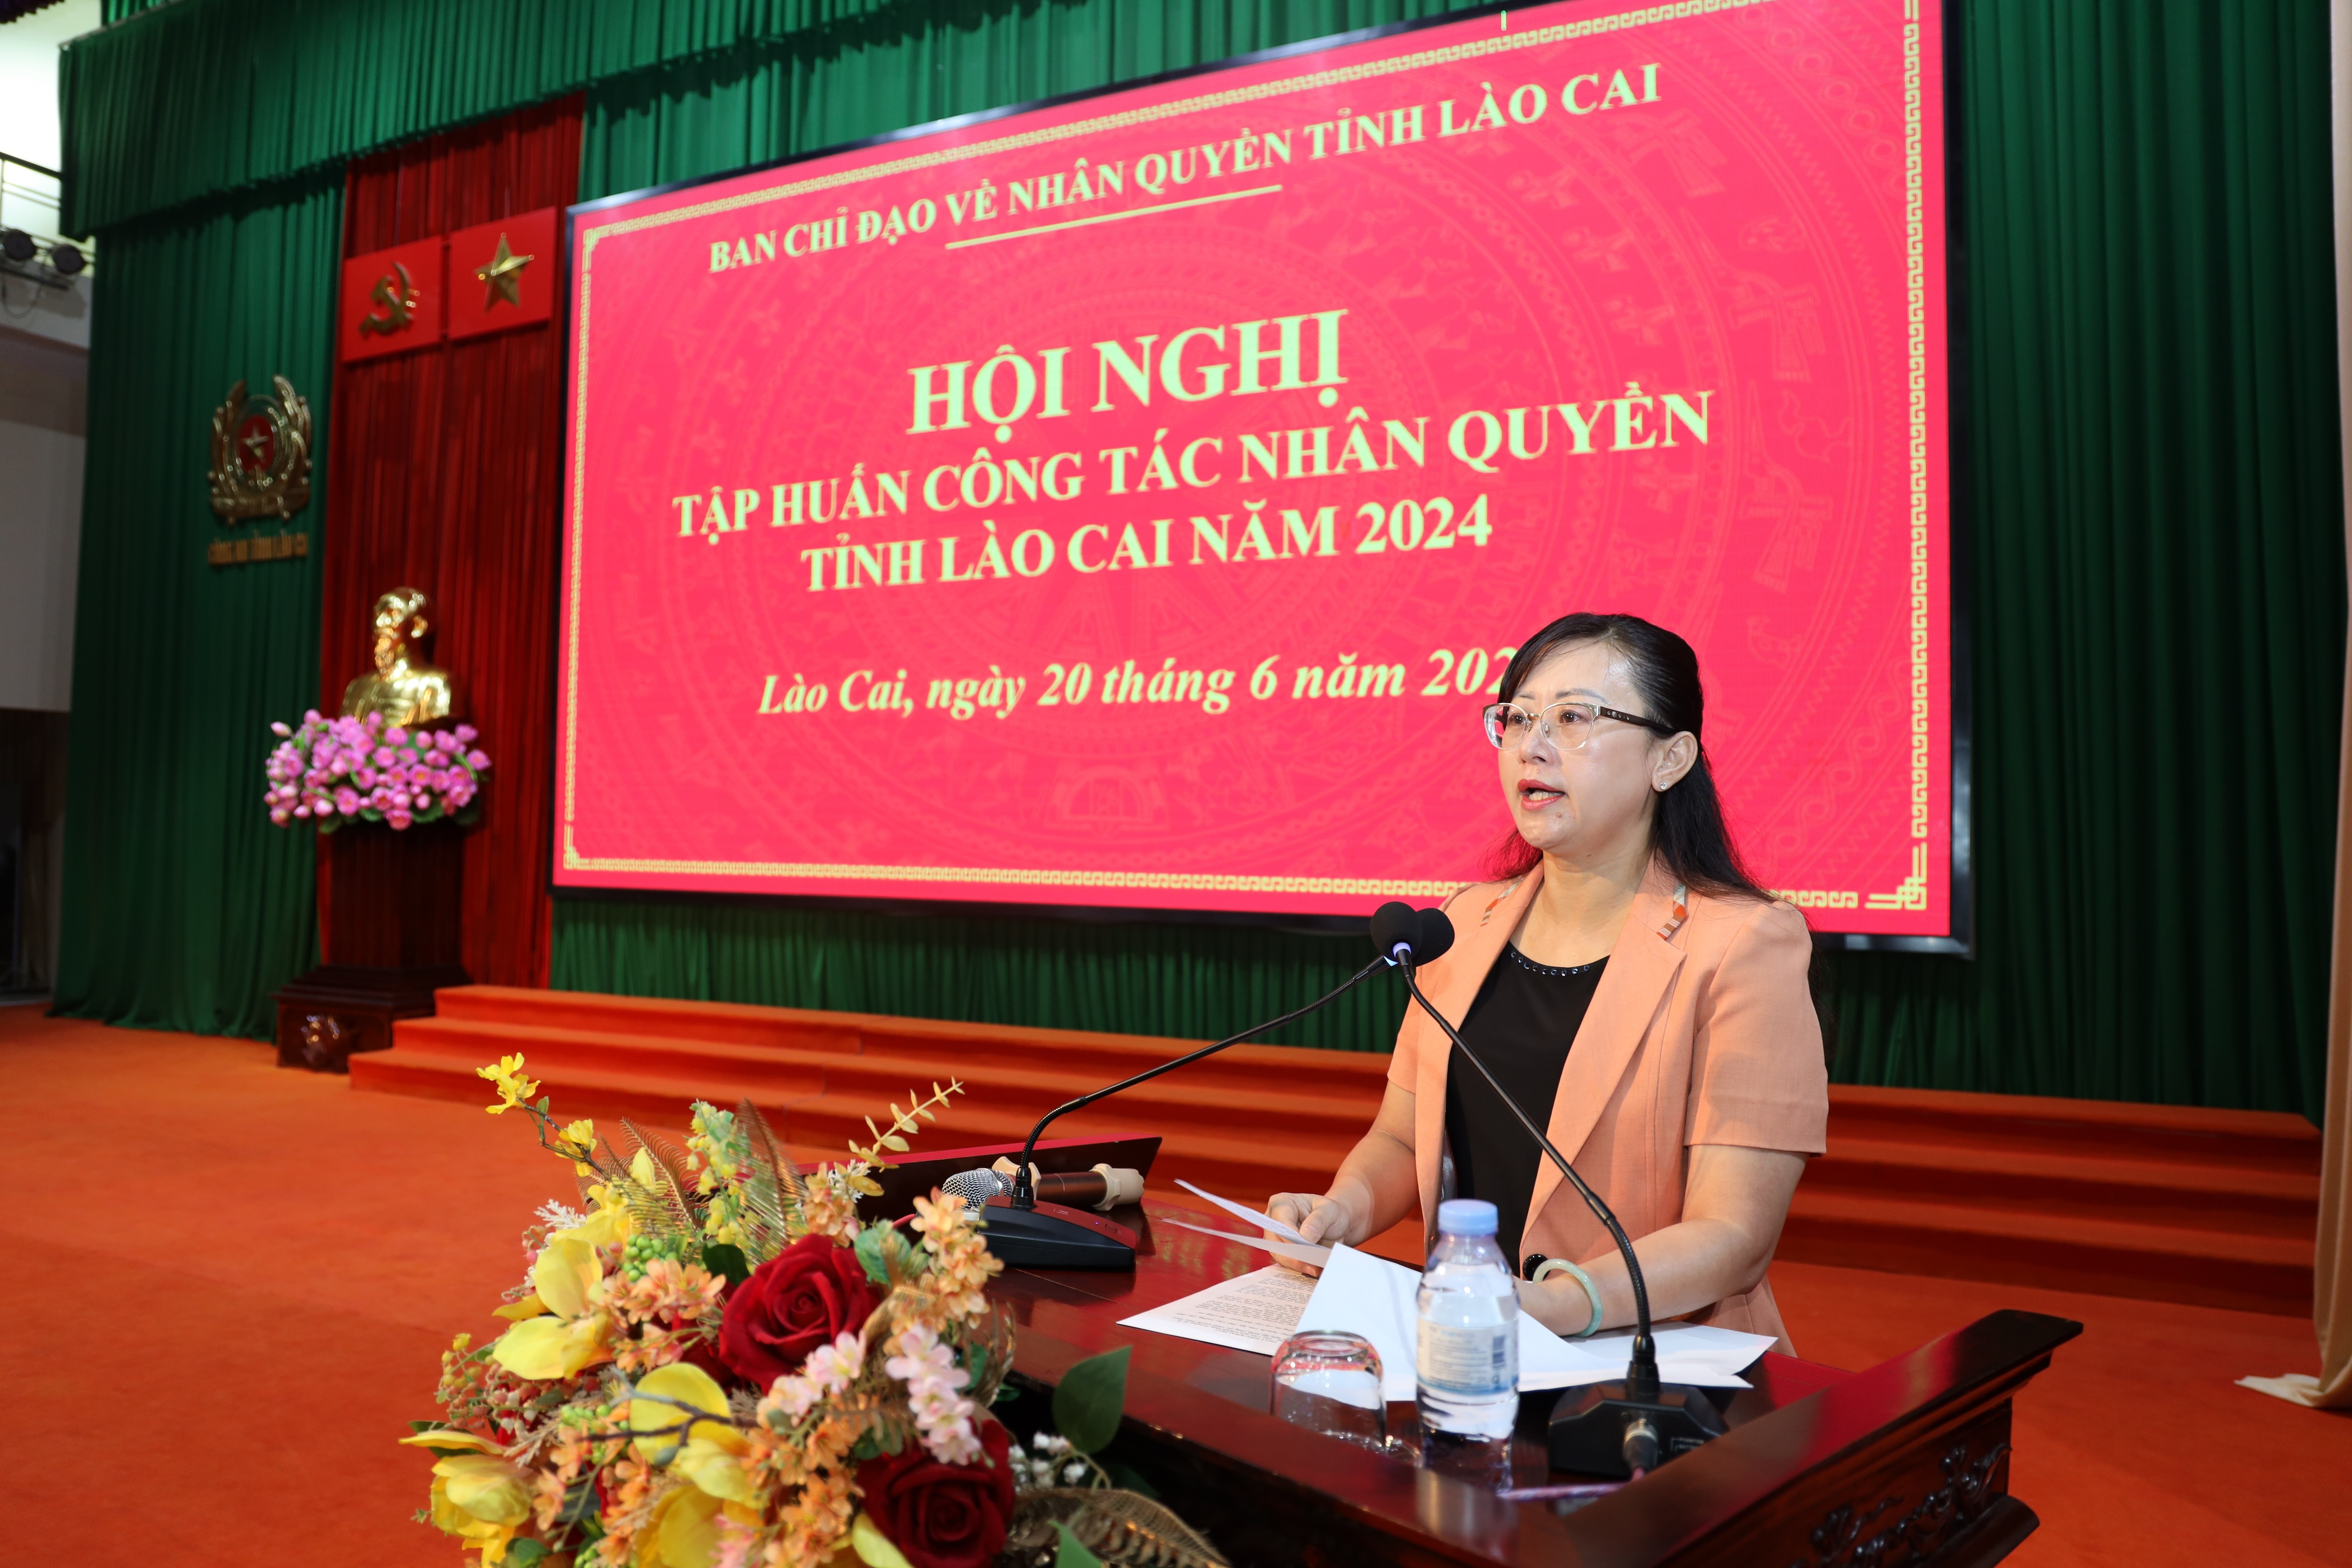 Bà Giàng Thị Dung, Phó Chủ tịch UBND tỉnh, Trưởng Ban chỉ đạo nhân quyền tỉnh Lào Cai 